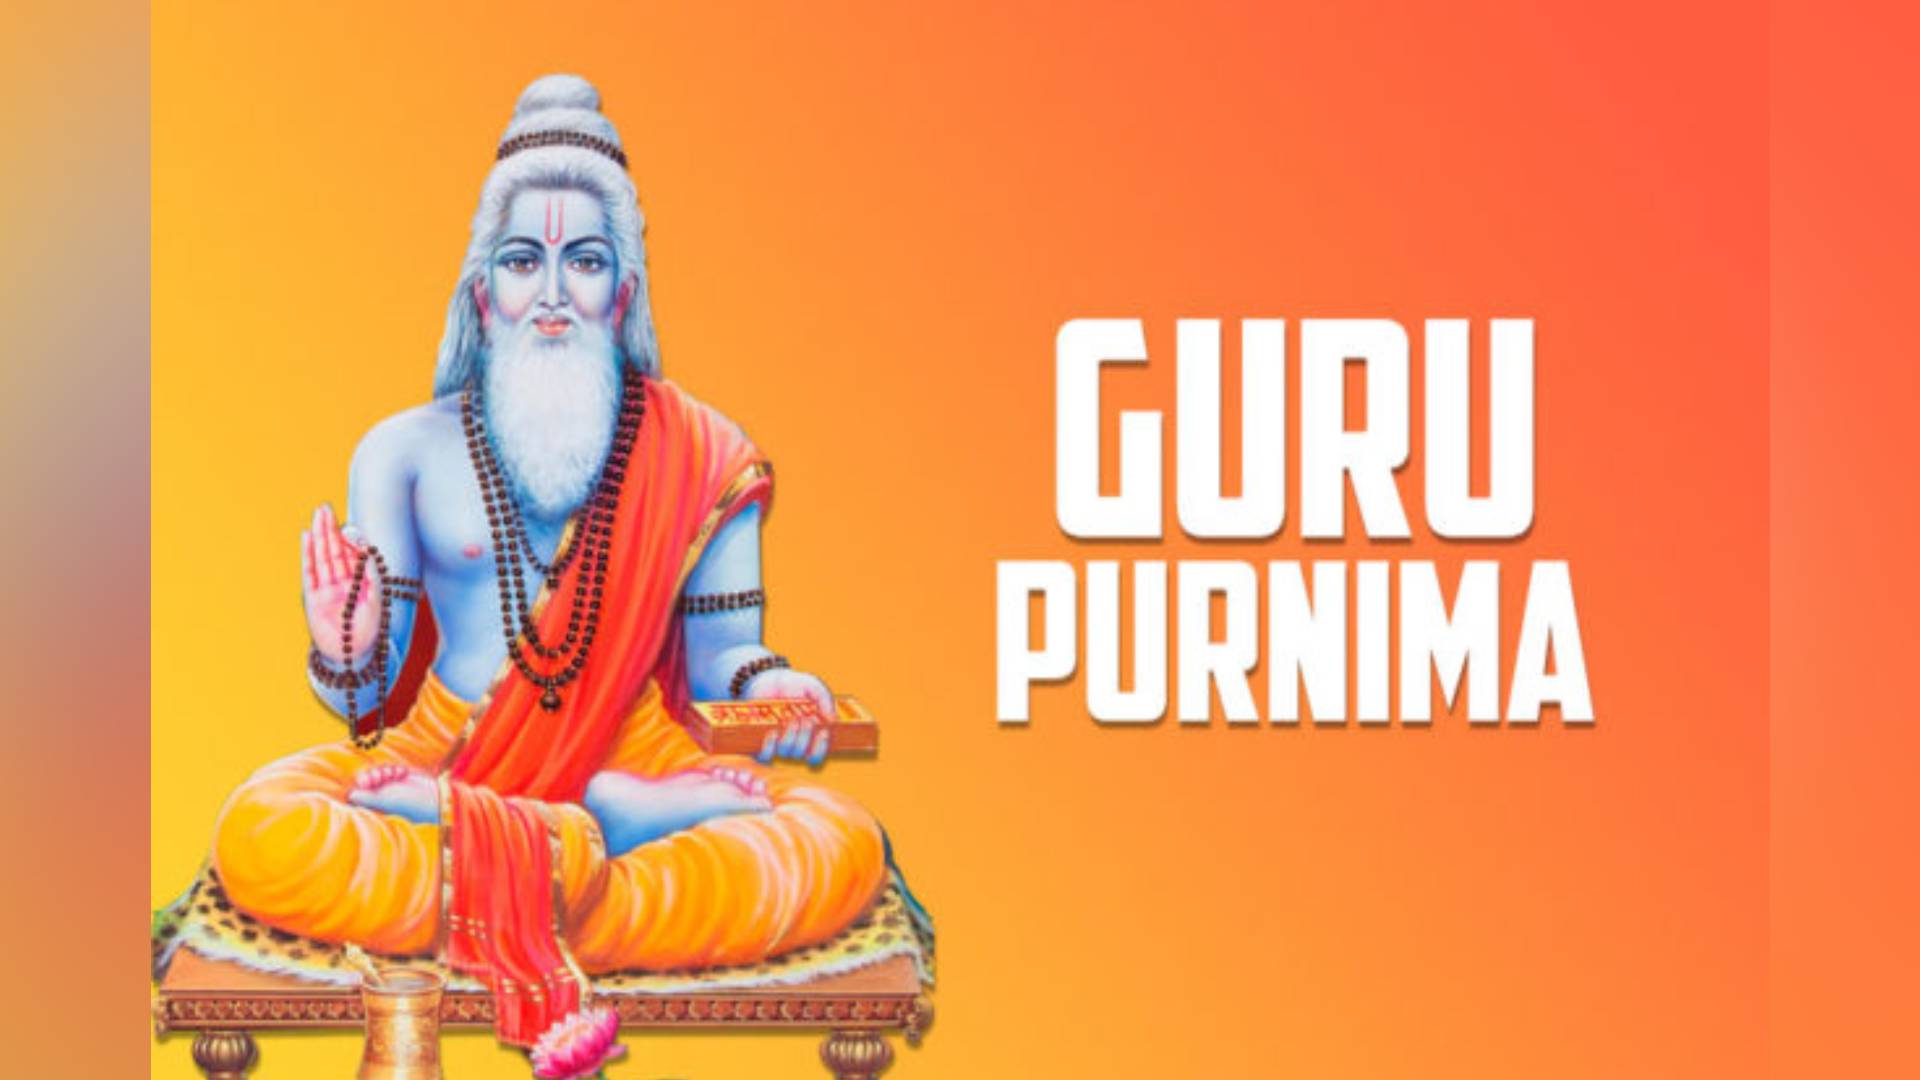 Happy Guru Purnima Images